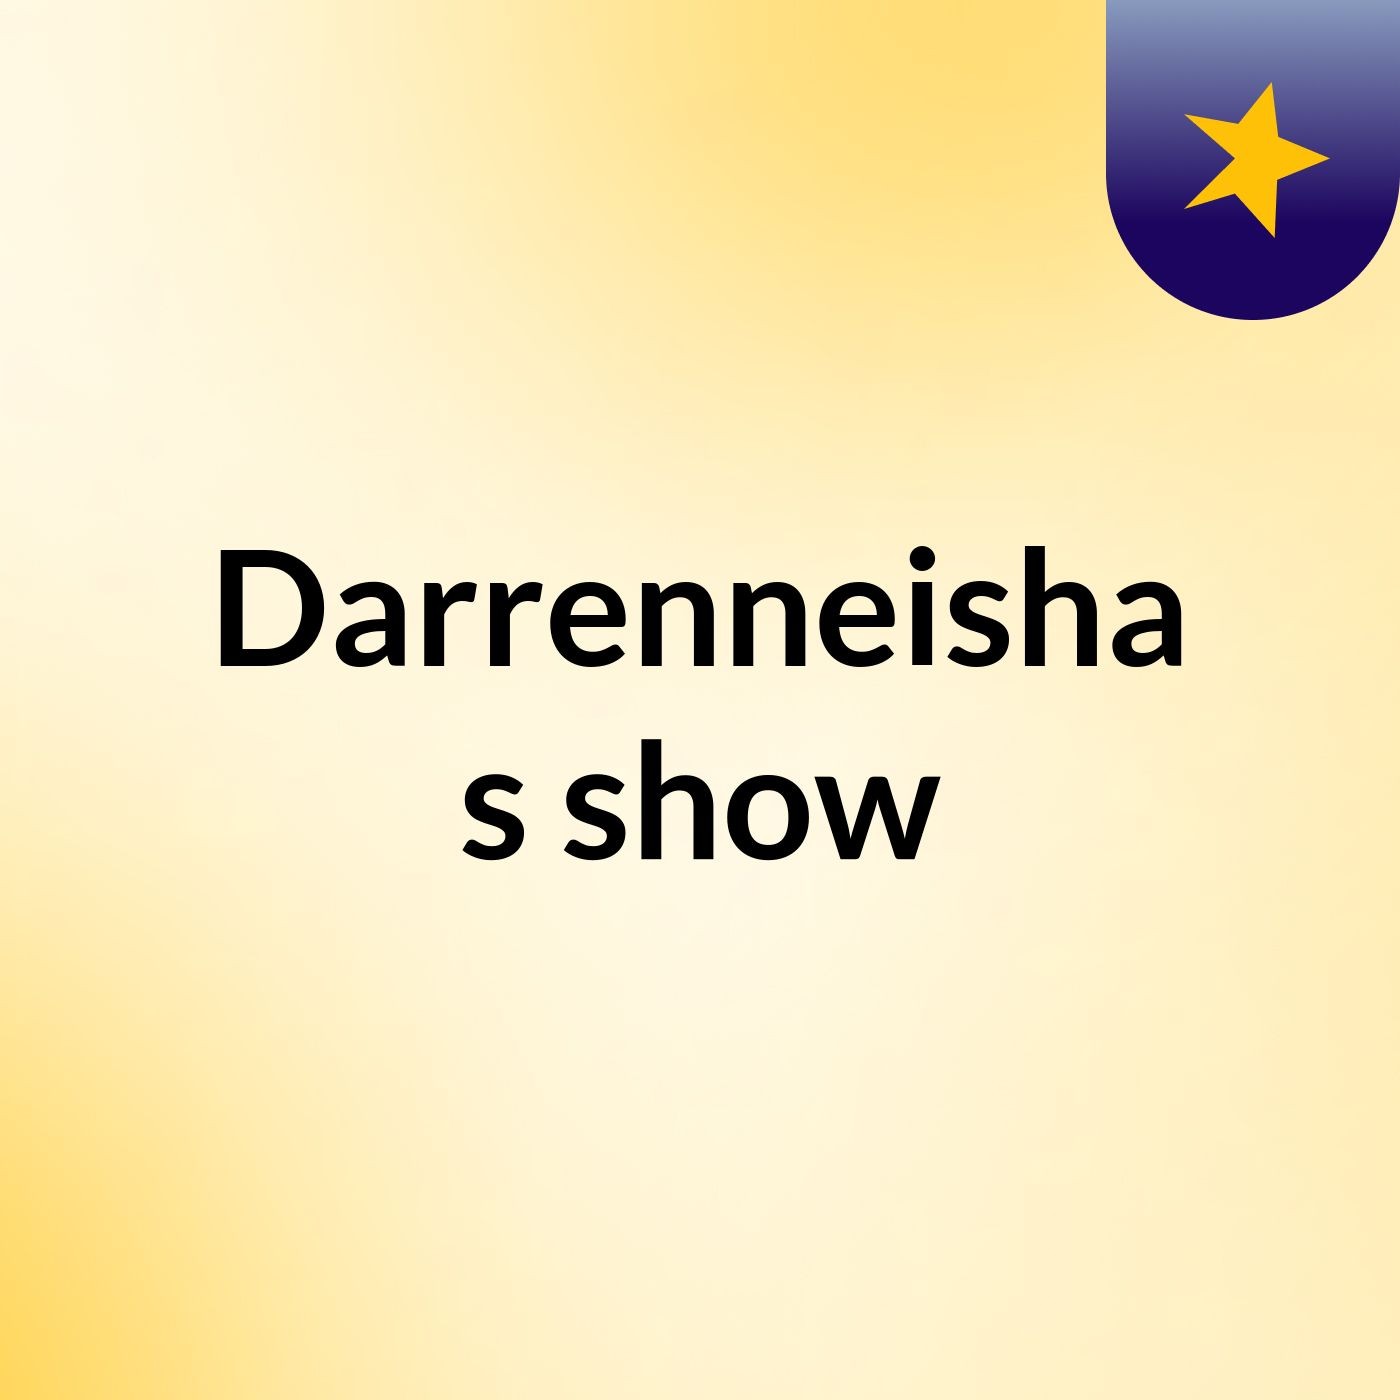 Episode 5 - Darrenneisha's show